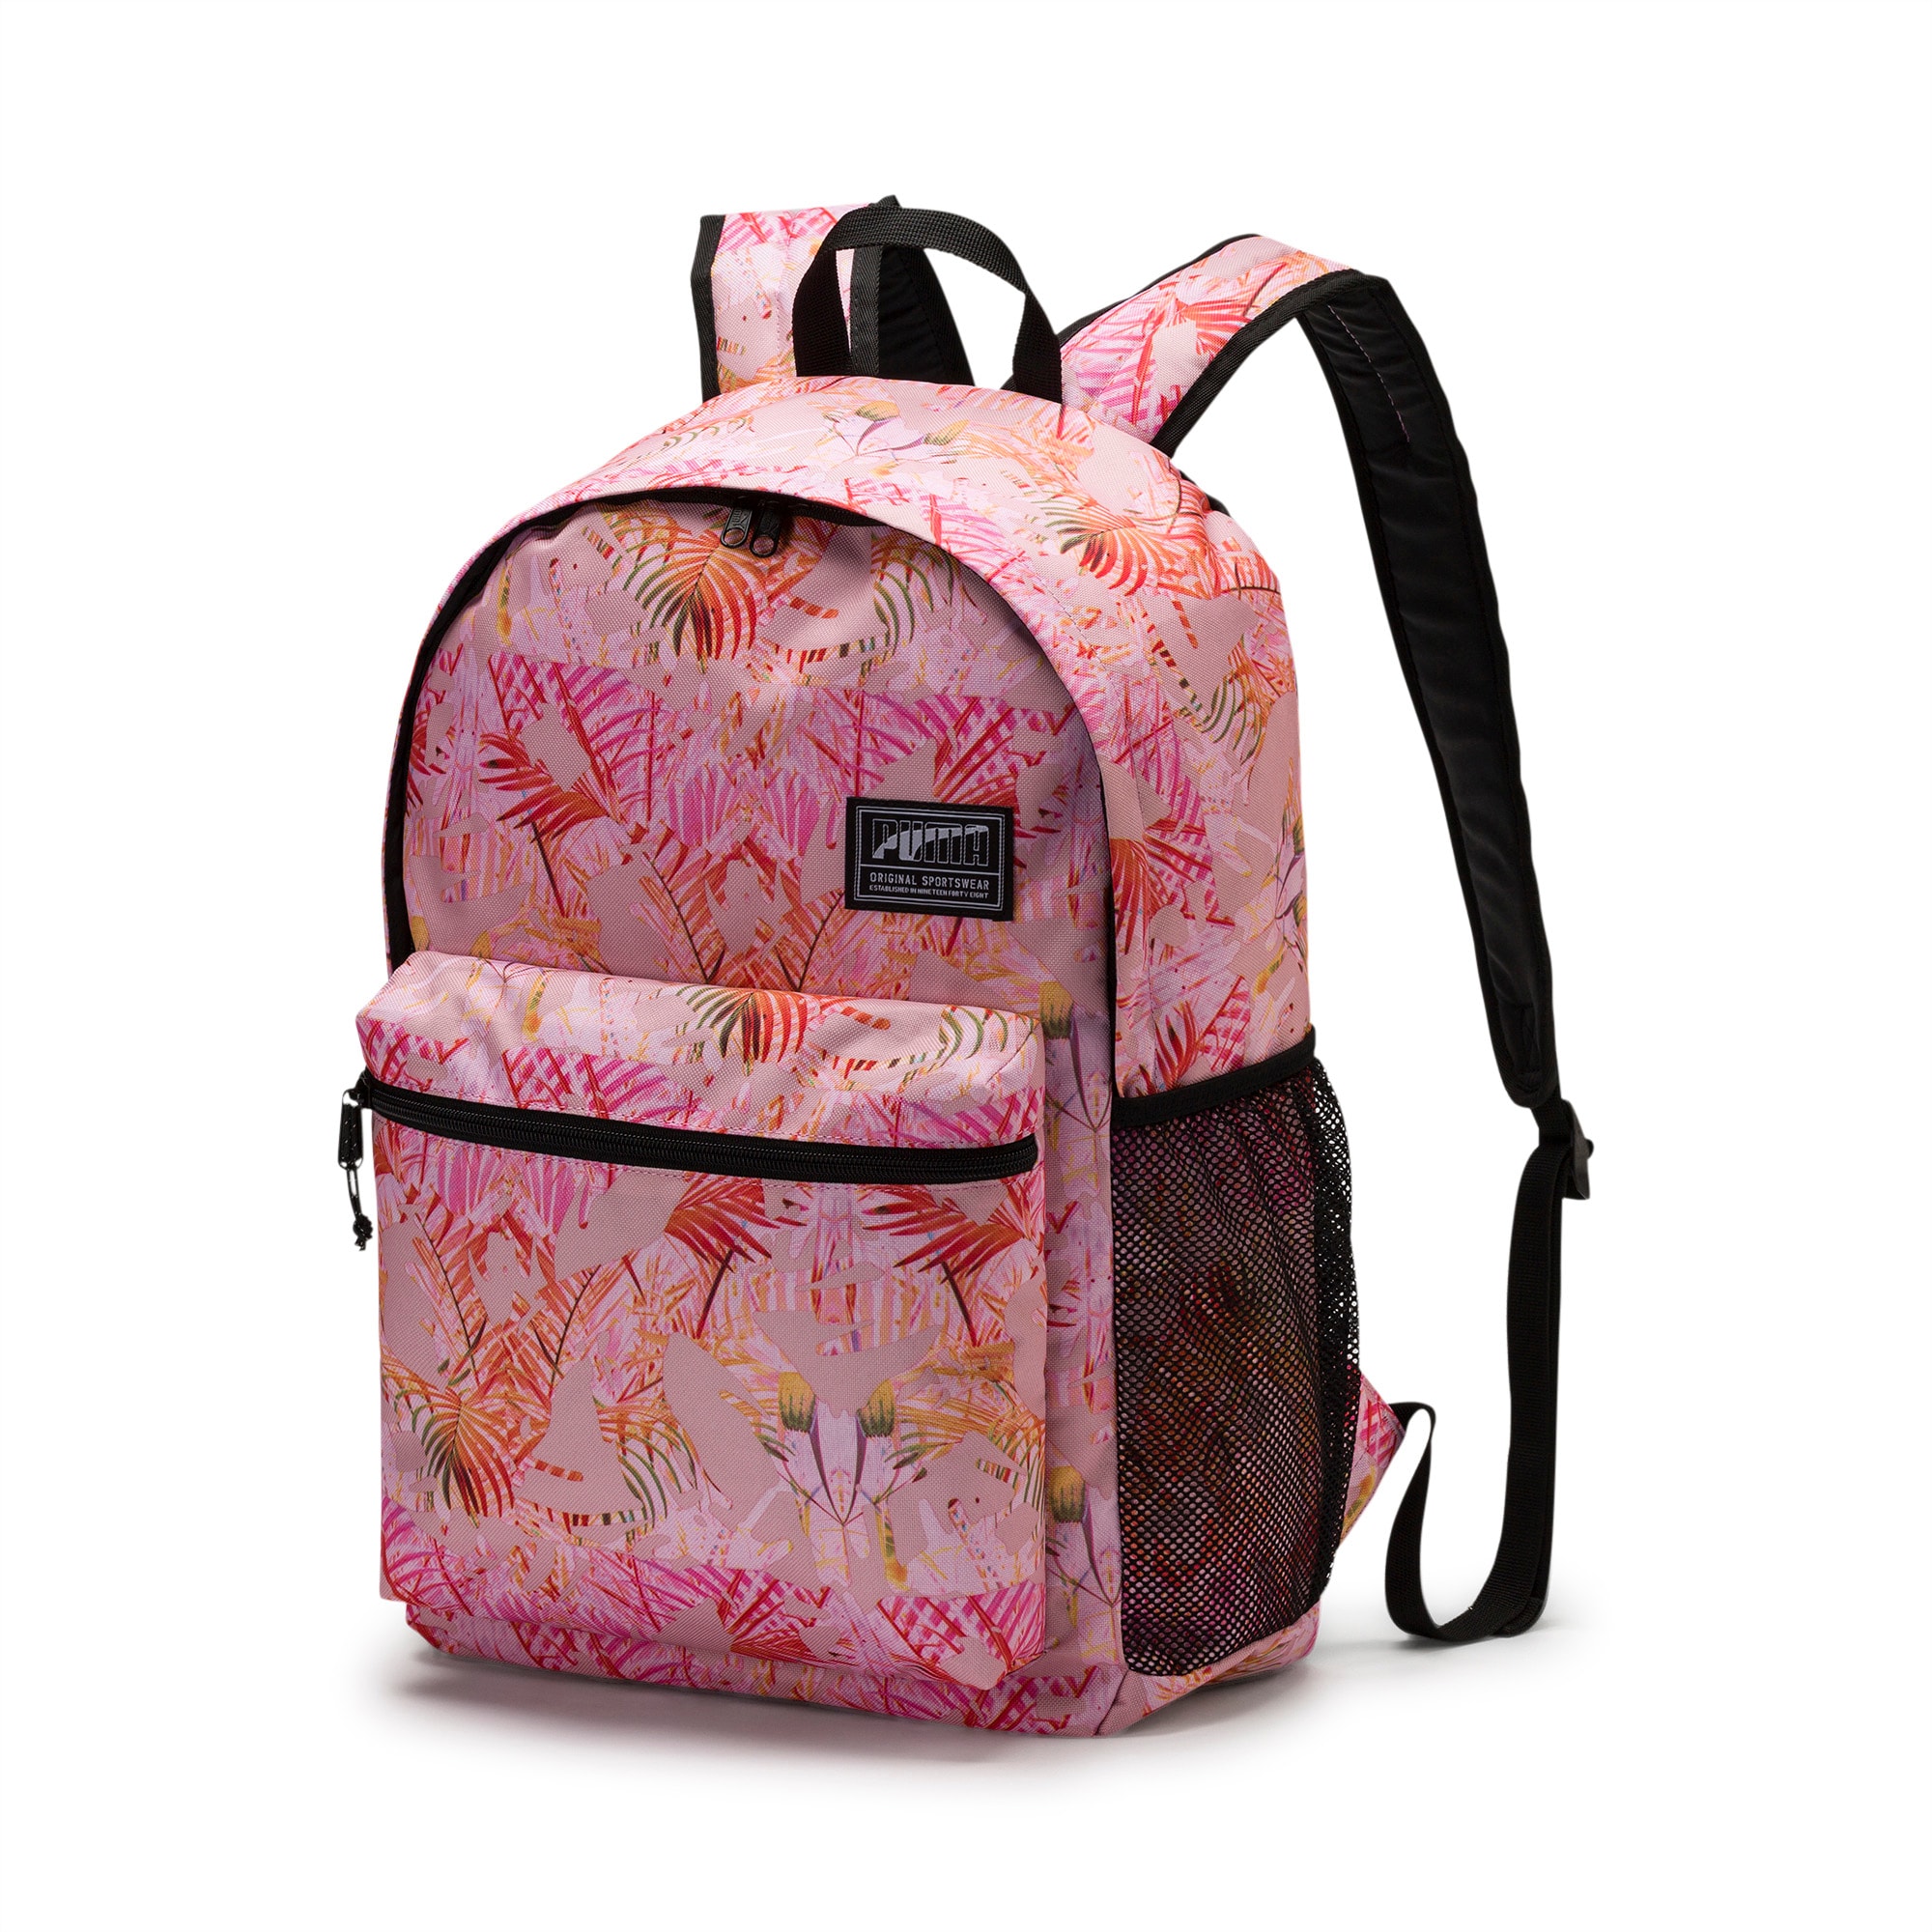 puma academy backpack